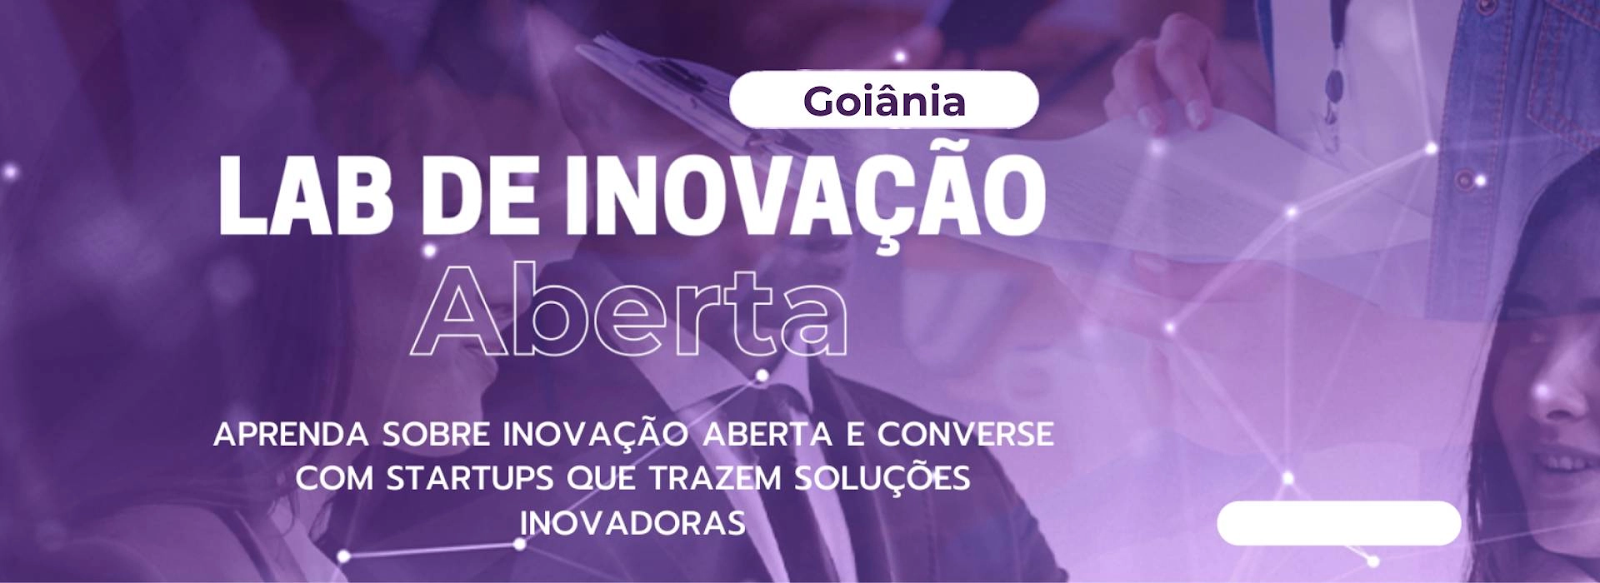 Inovação aberta movimenta o ecossistema empreendedor em Goiás